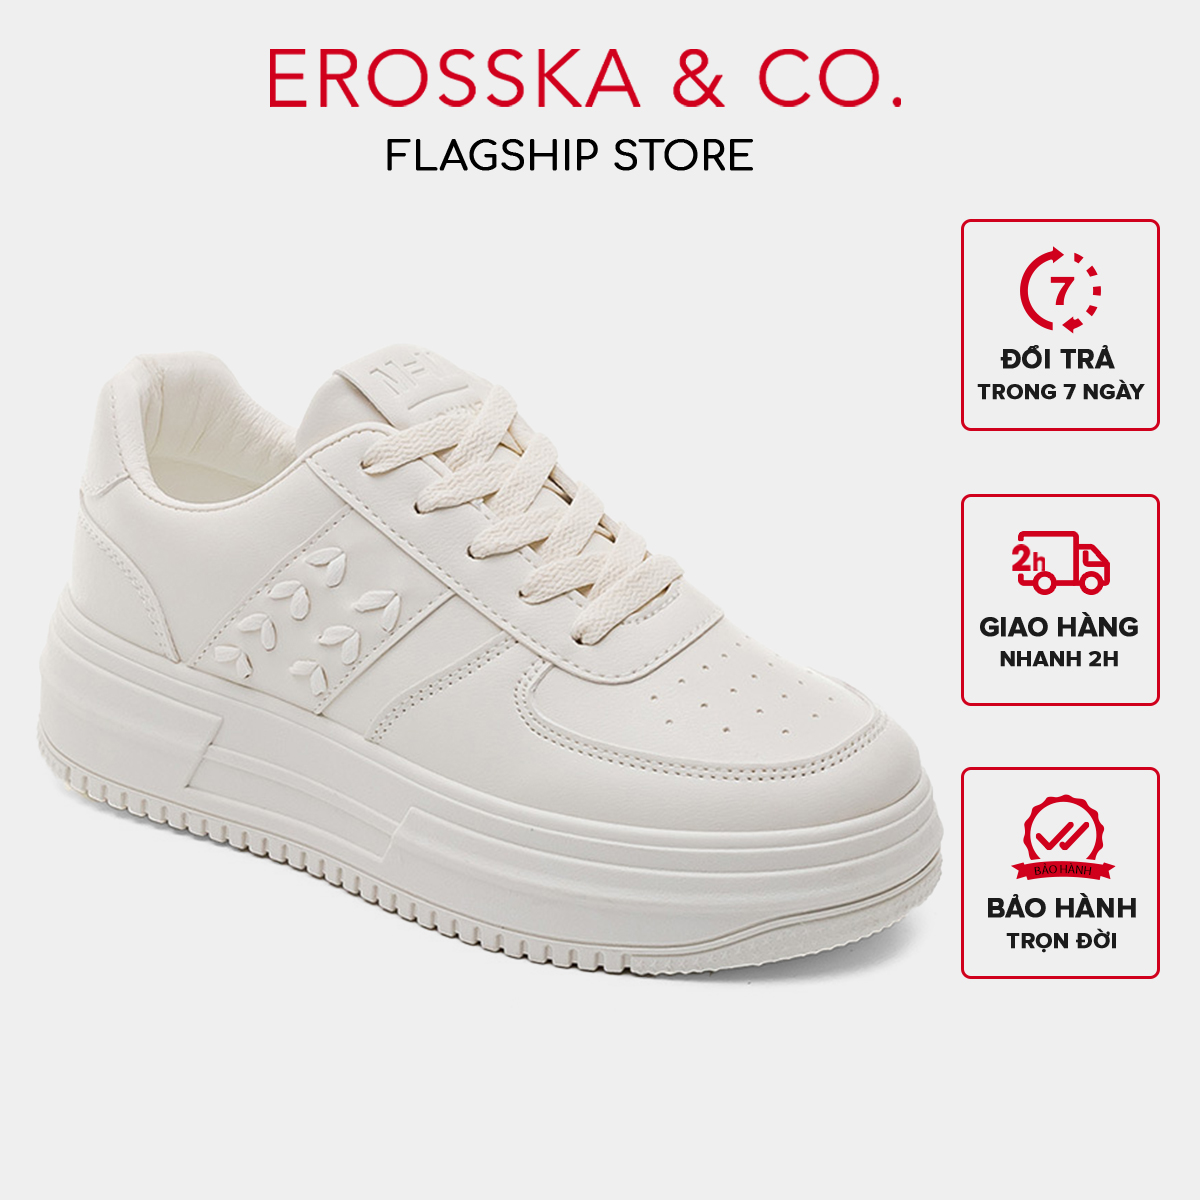 Erosska - Giày sneaker đế độn phong cách basic năng động - GS012